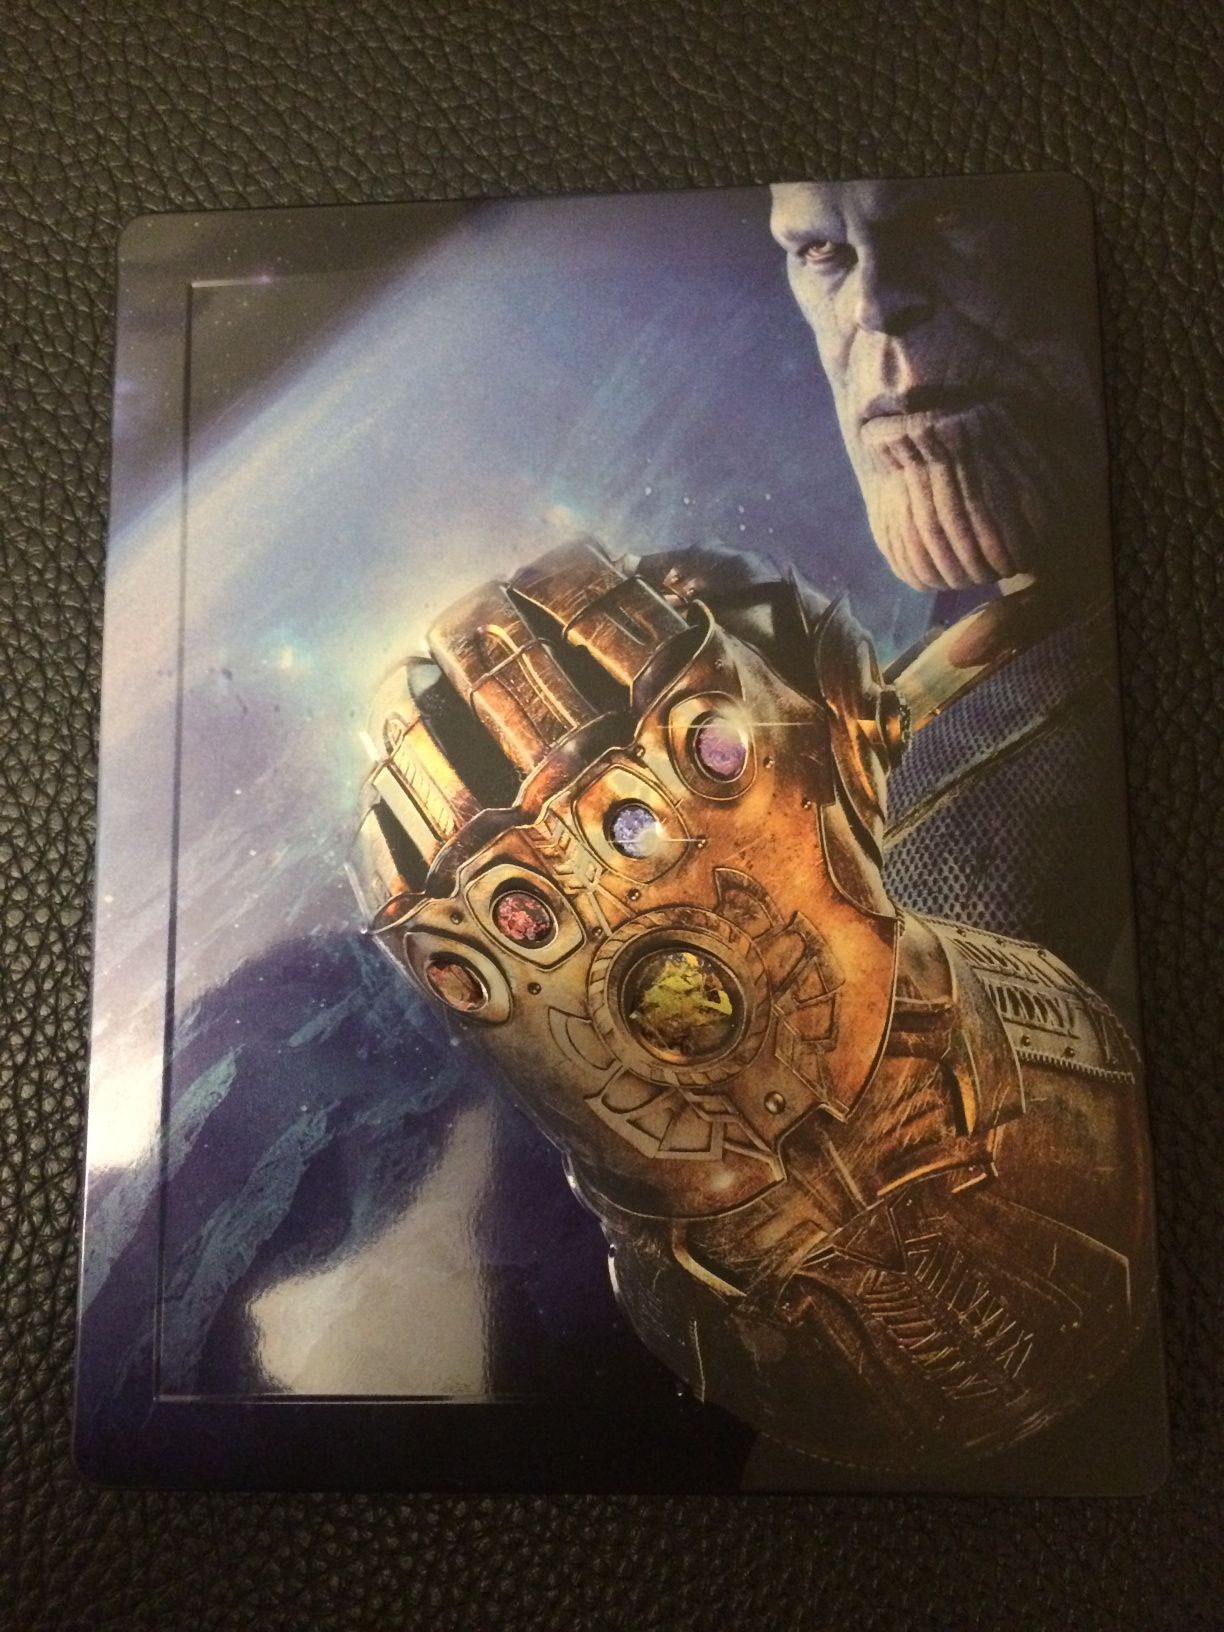 Avengers Infinity War steelbook blu-ray